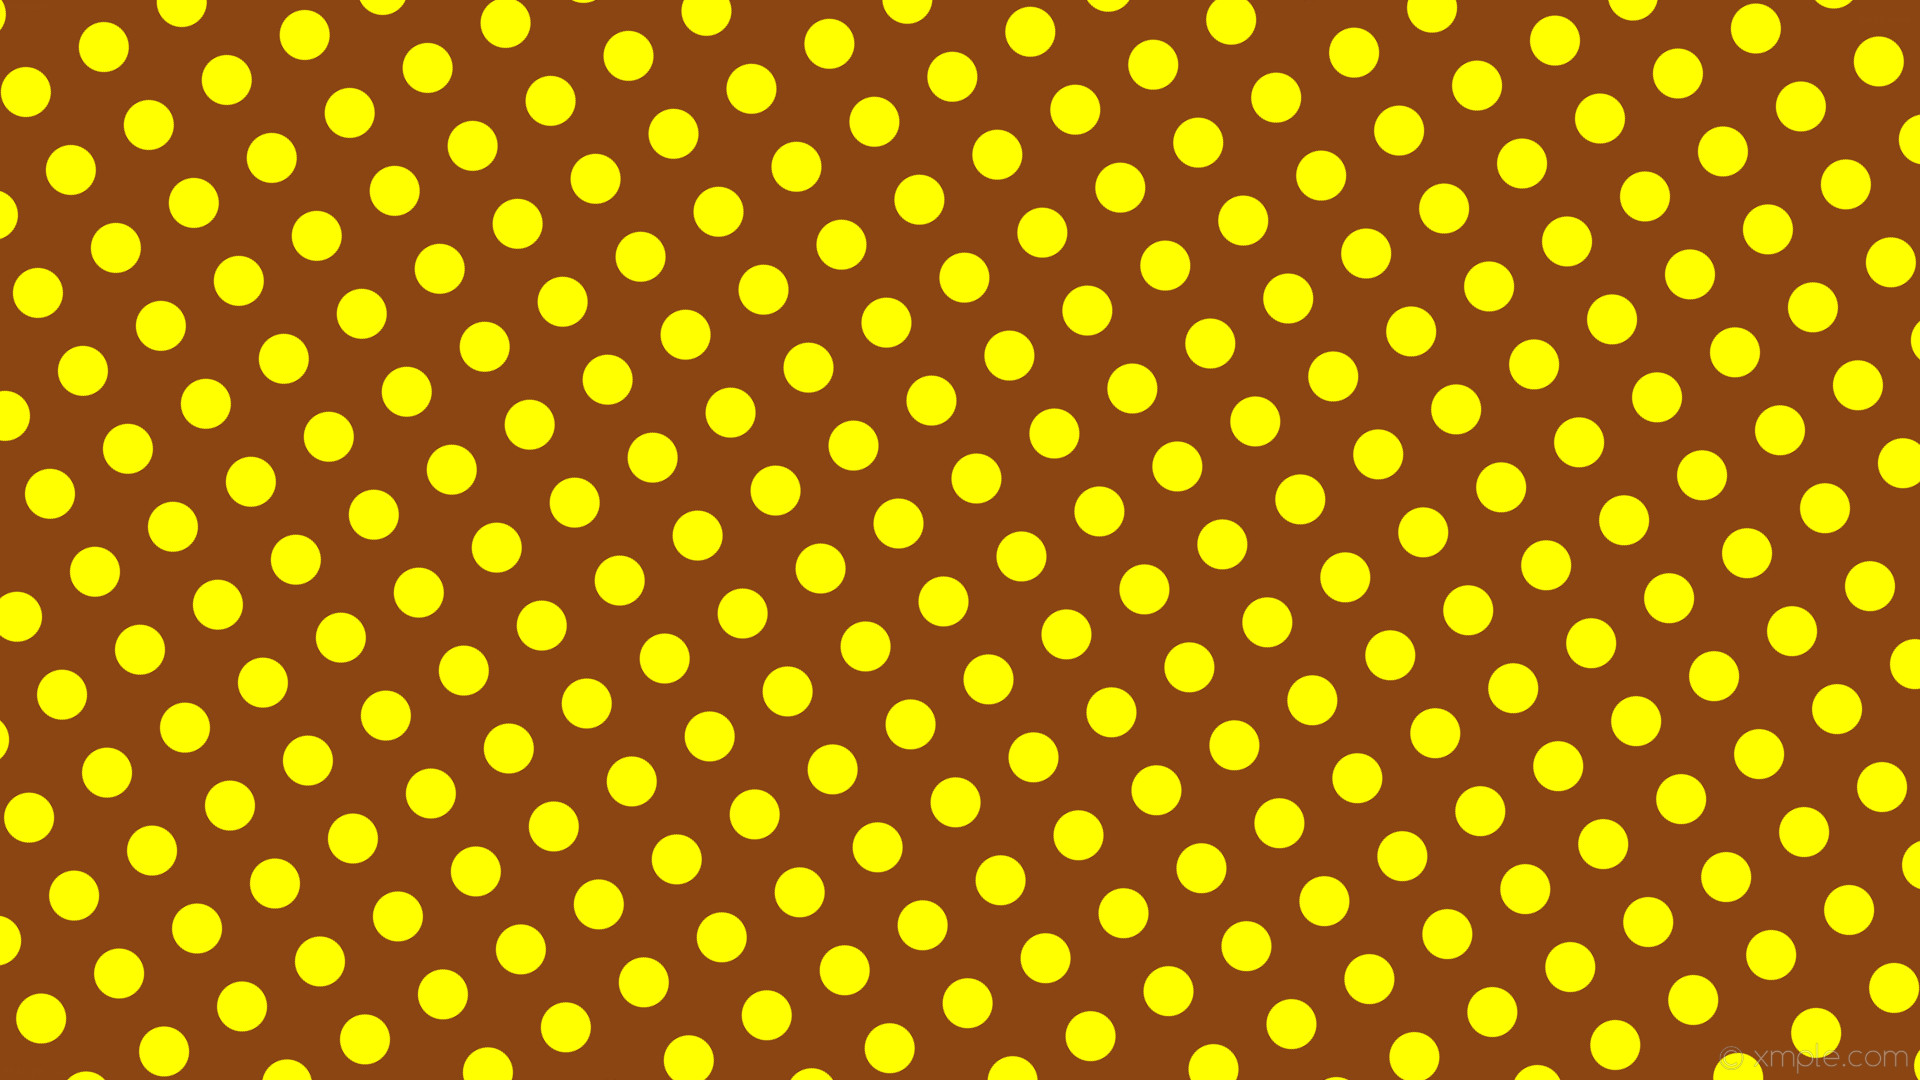 1920x1080 wallpaper yellow brown polka dots spots saddle brown #8b4513 #ffff00 30Â°  50px 90px